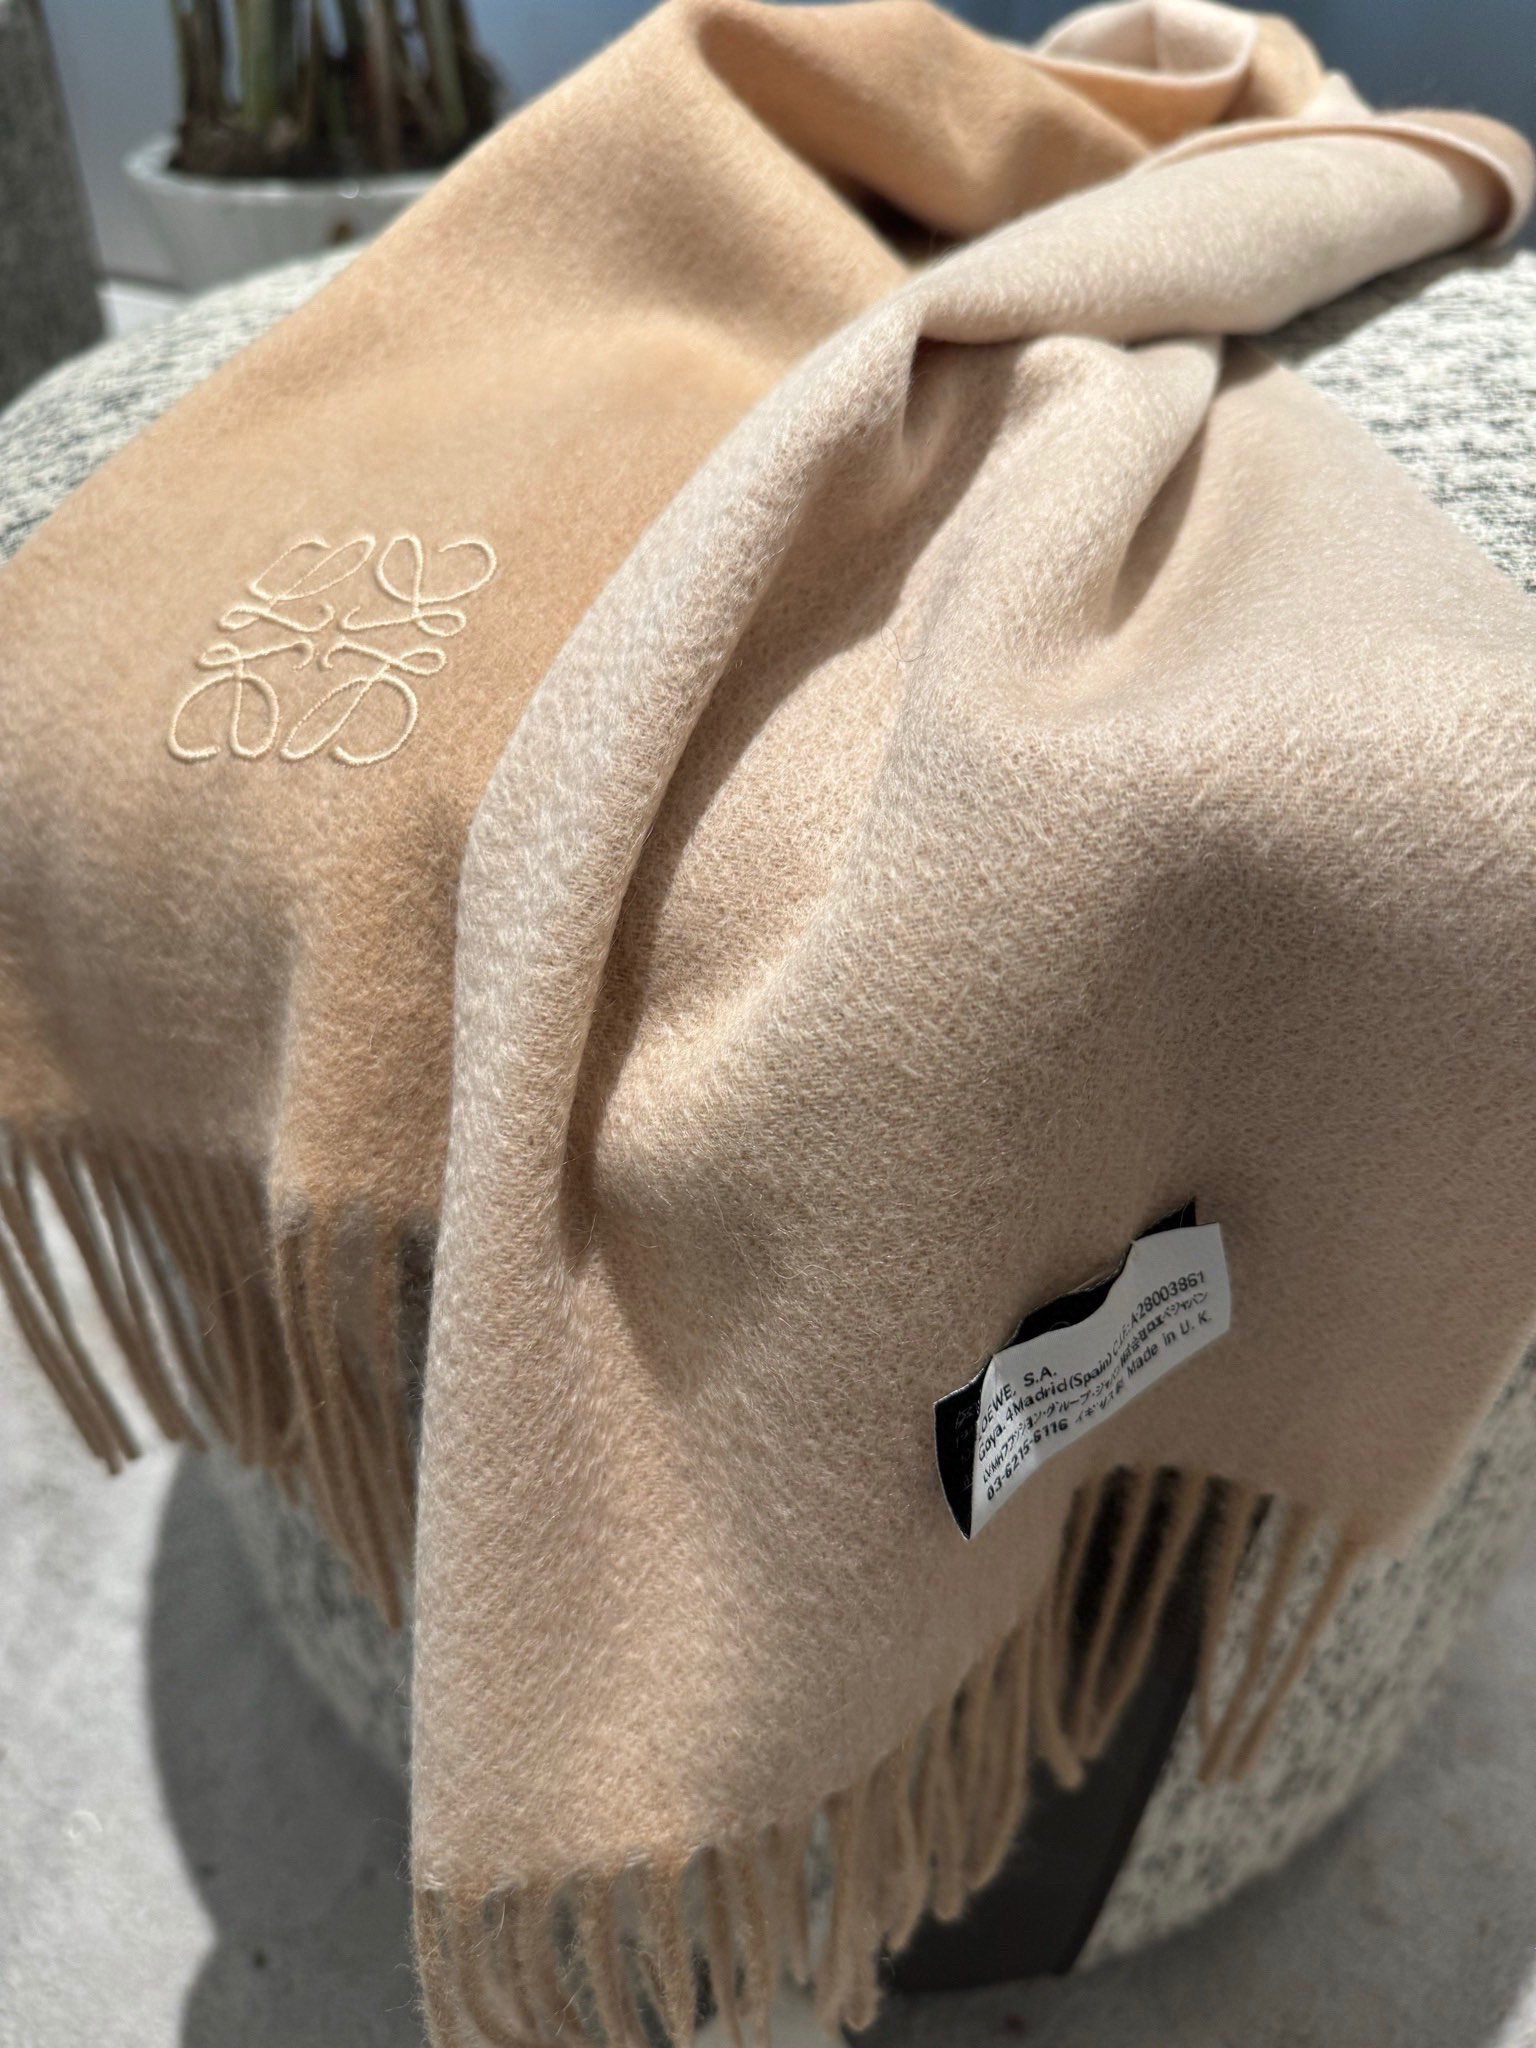 P经典色罗意威2023巴黎时装展商务男士女士通用双面羊绒披肩代工厂臻选上乘的超细羊绒纤维进行纯手工精梳处